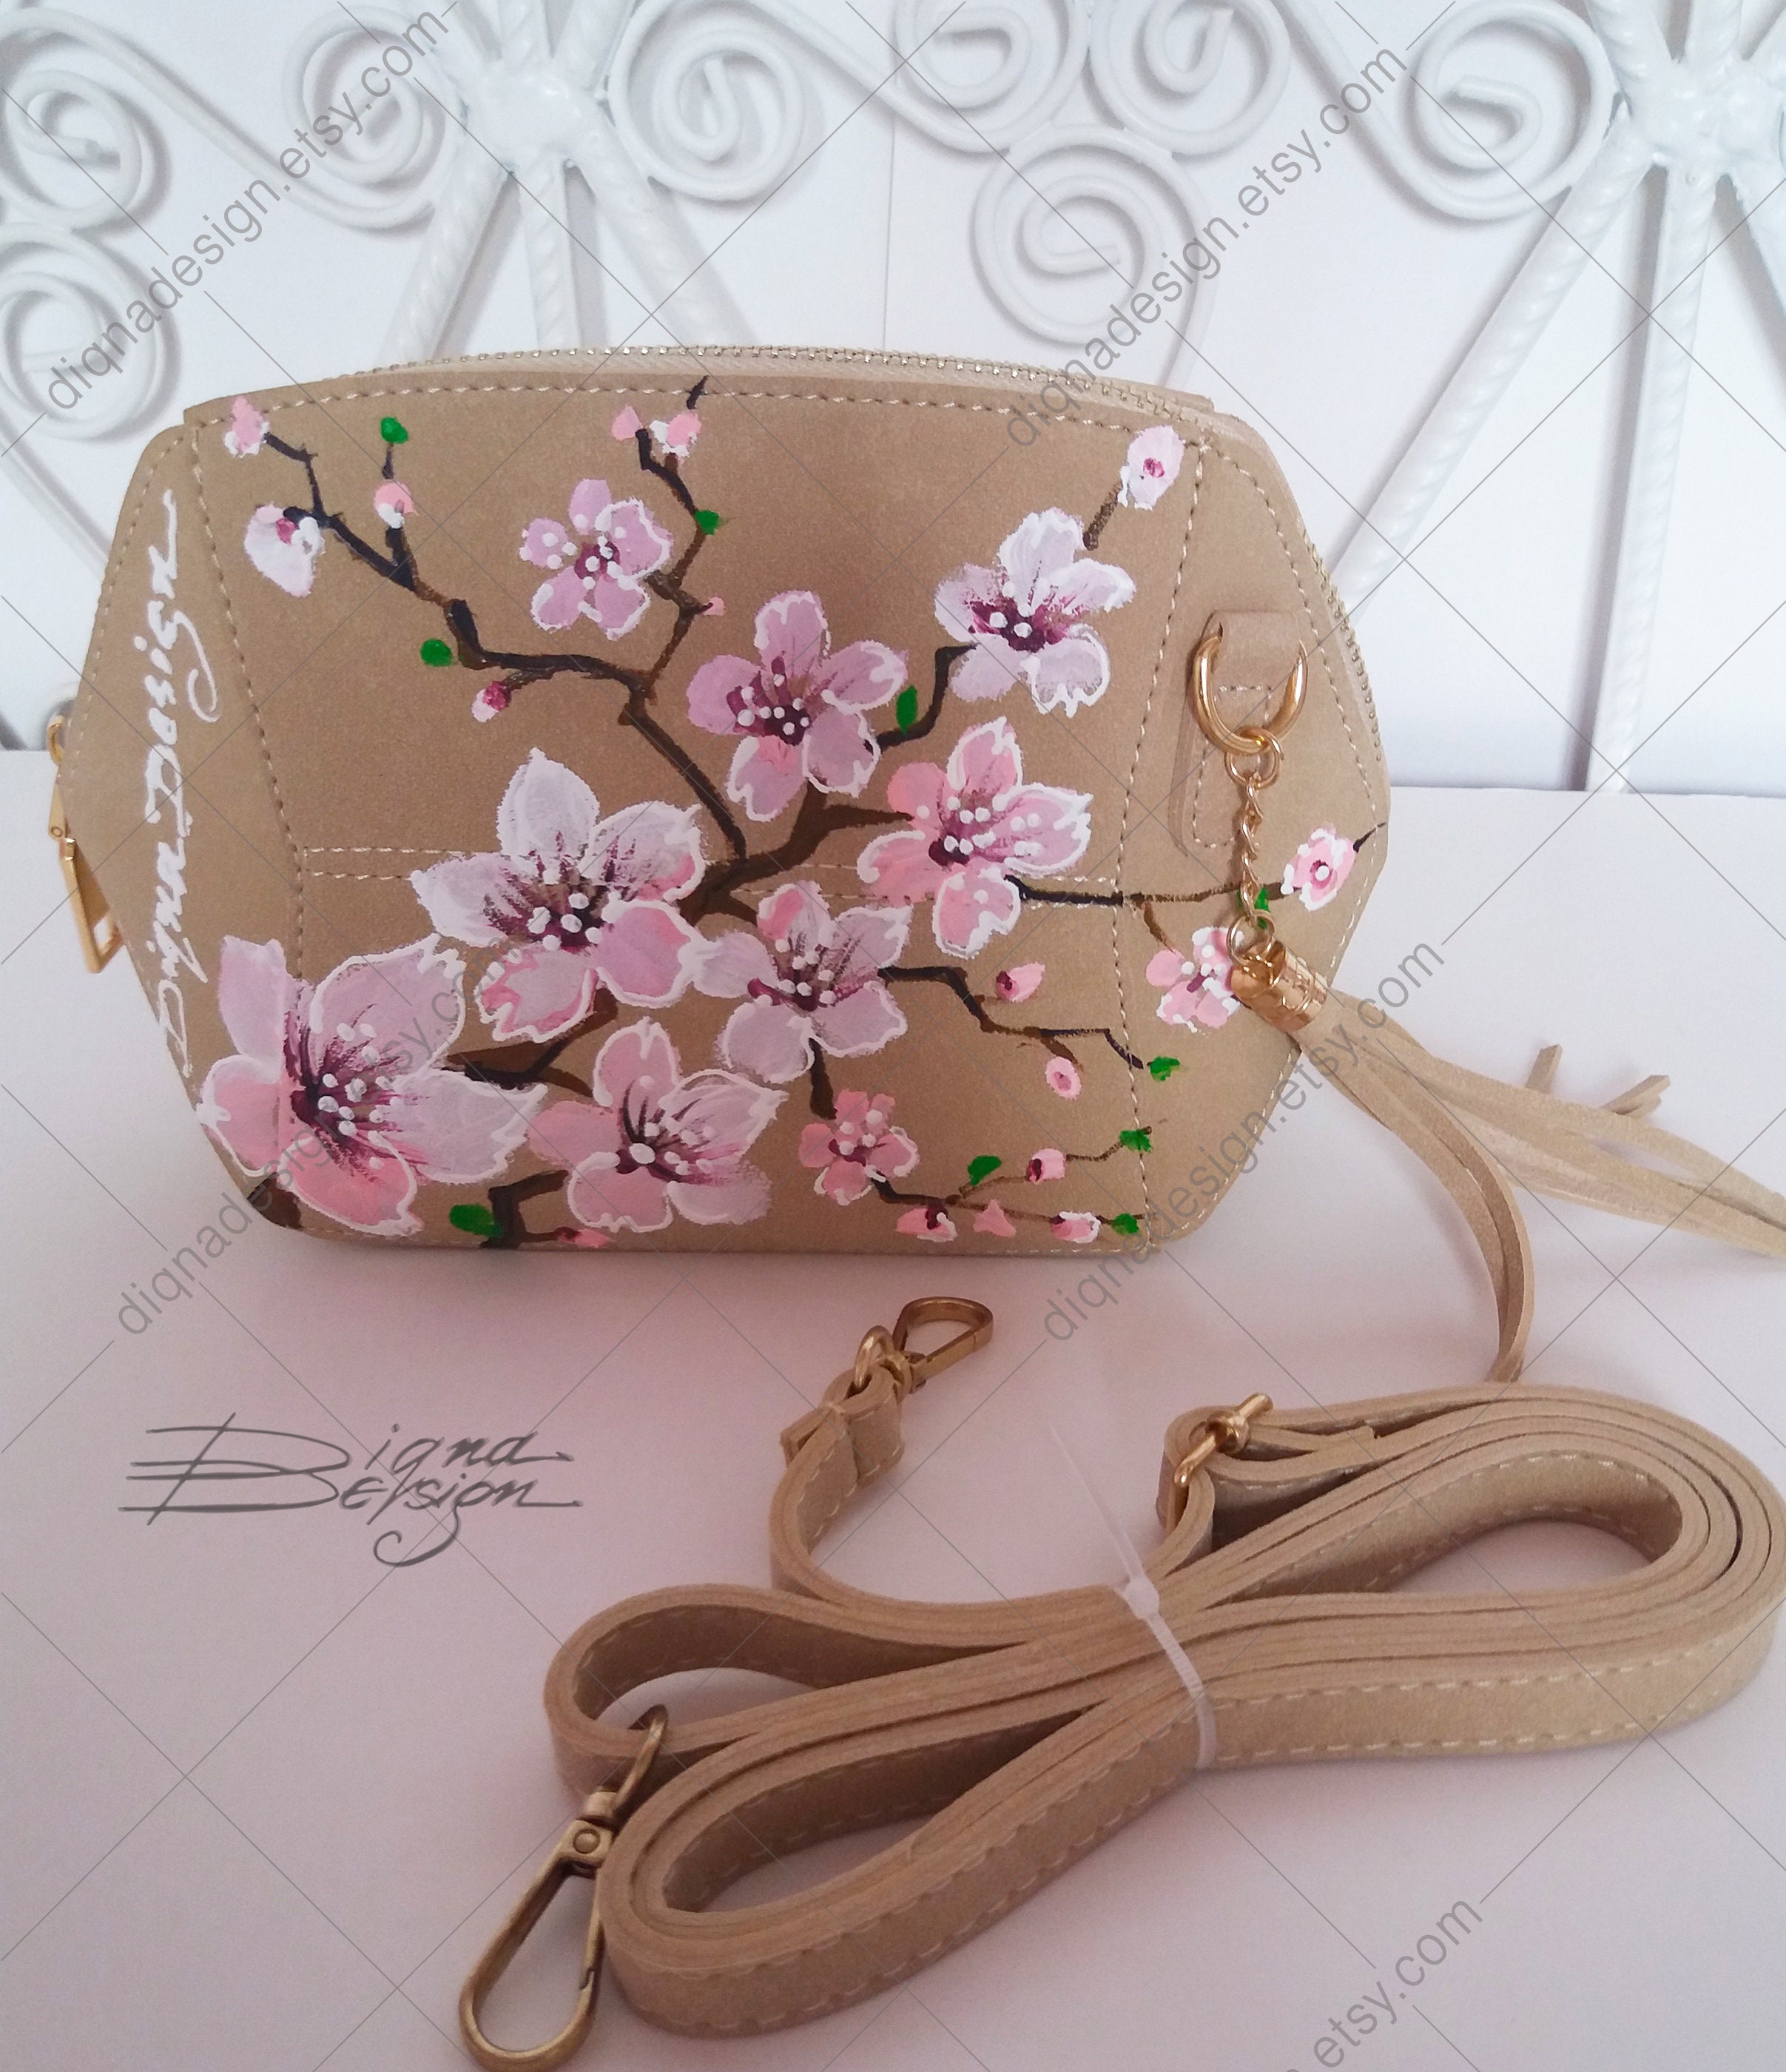 cherry blossom bag